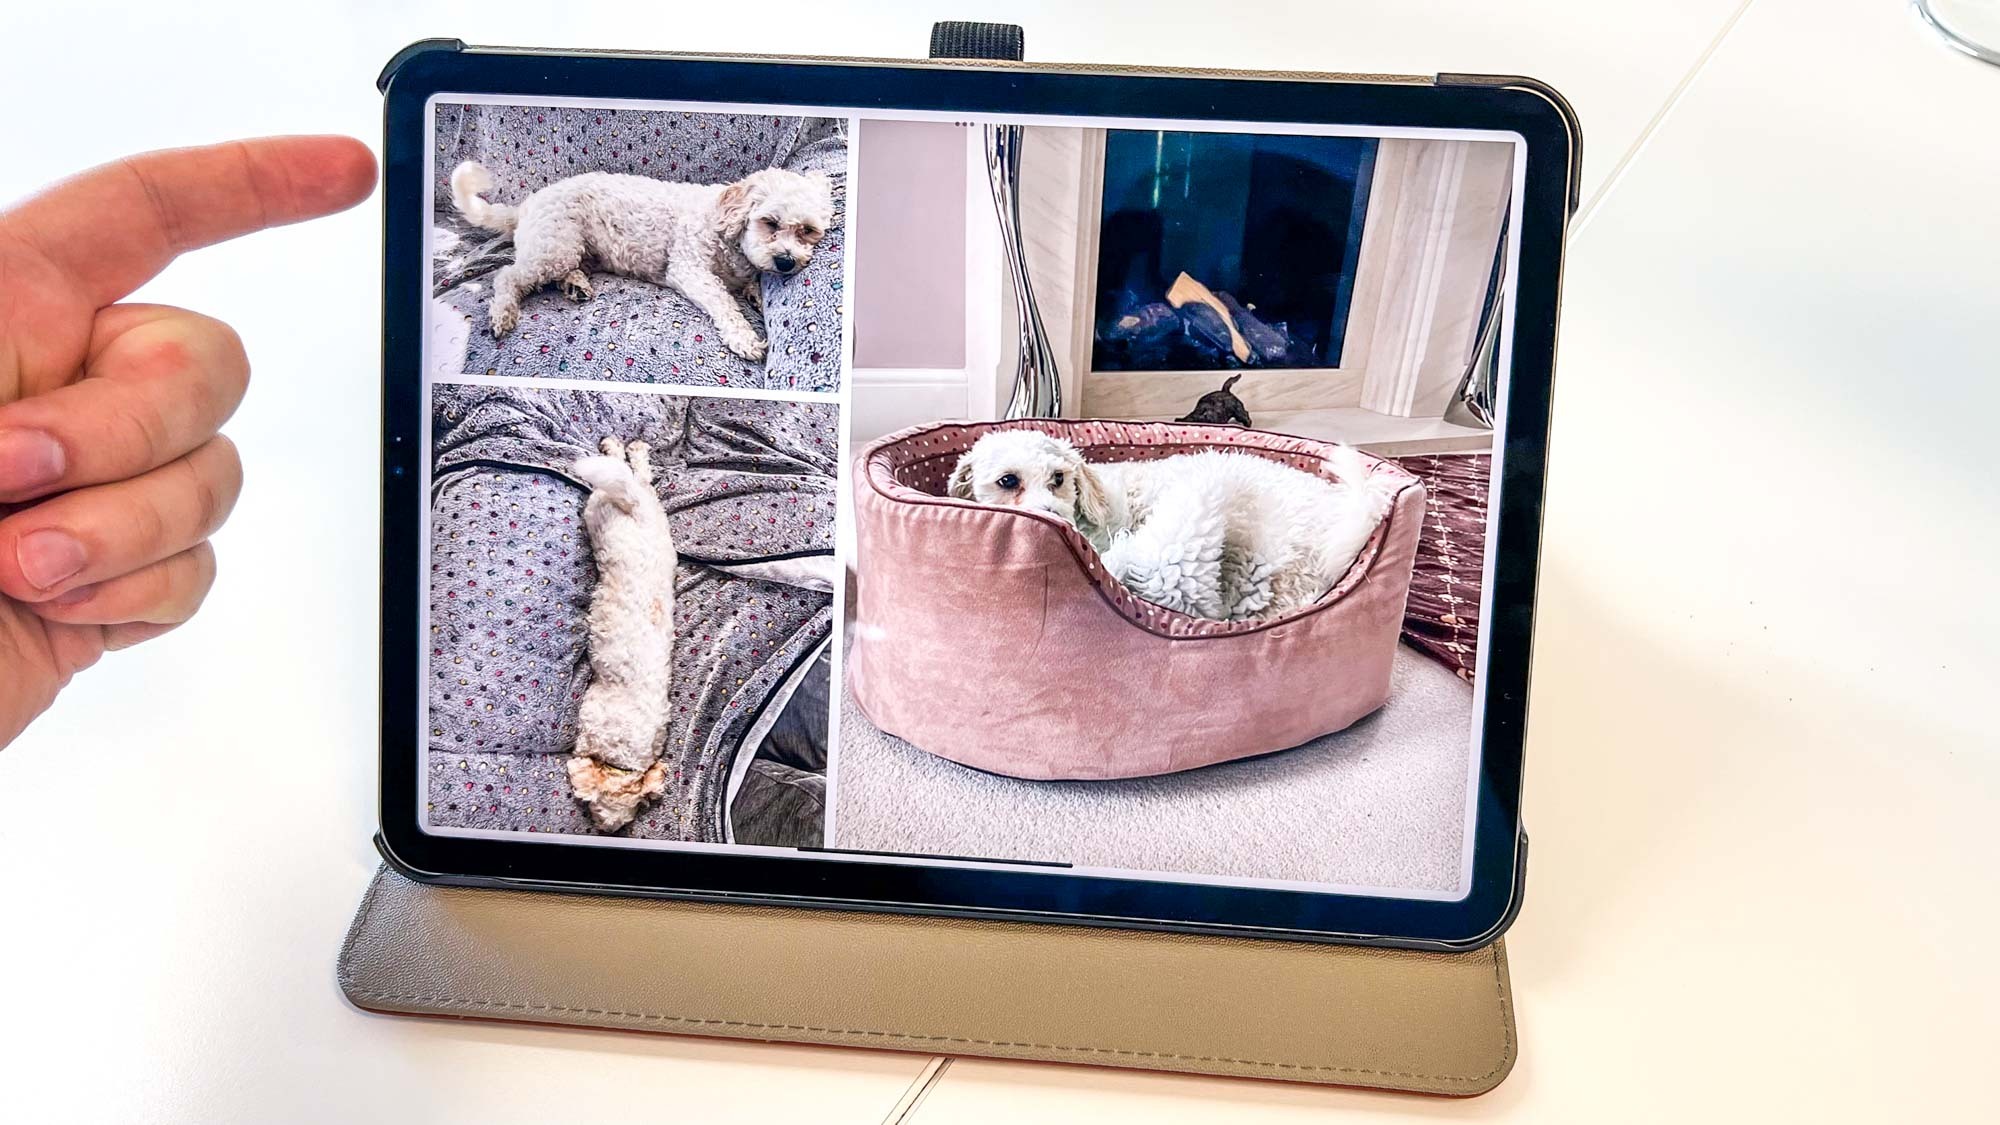 An iPad acting as a digital photo frame